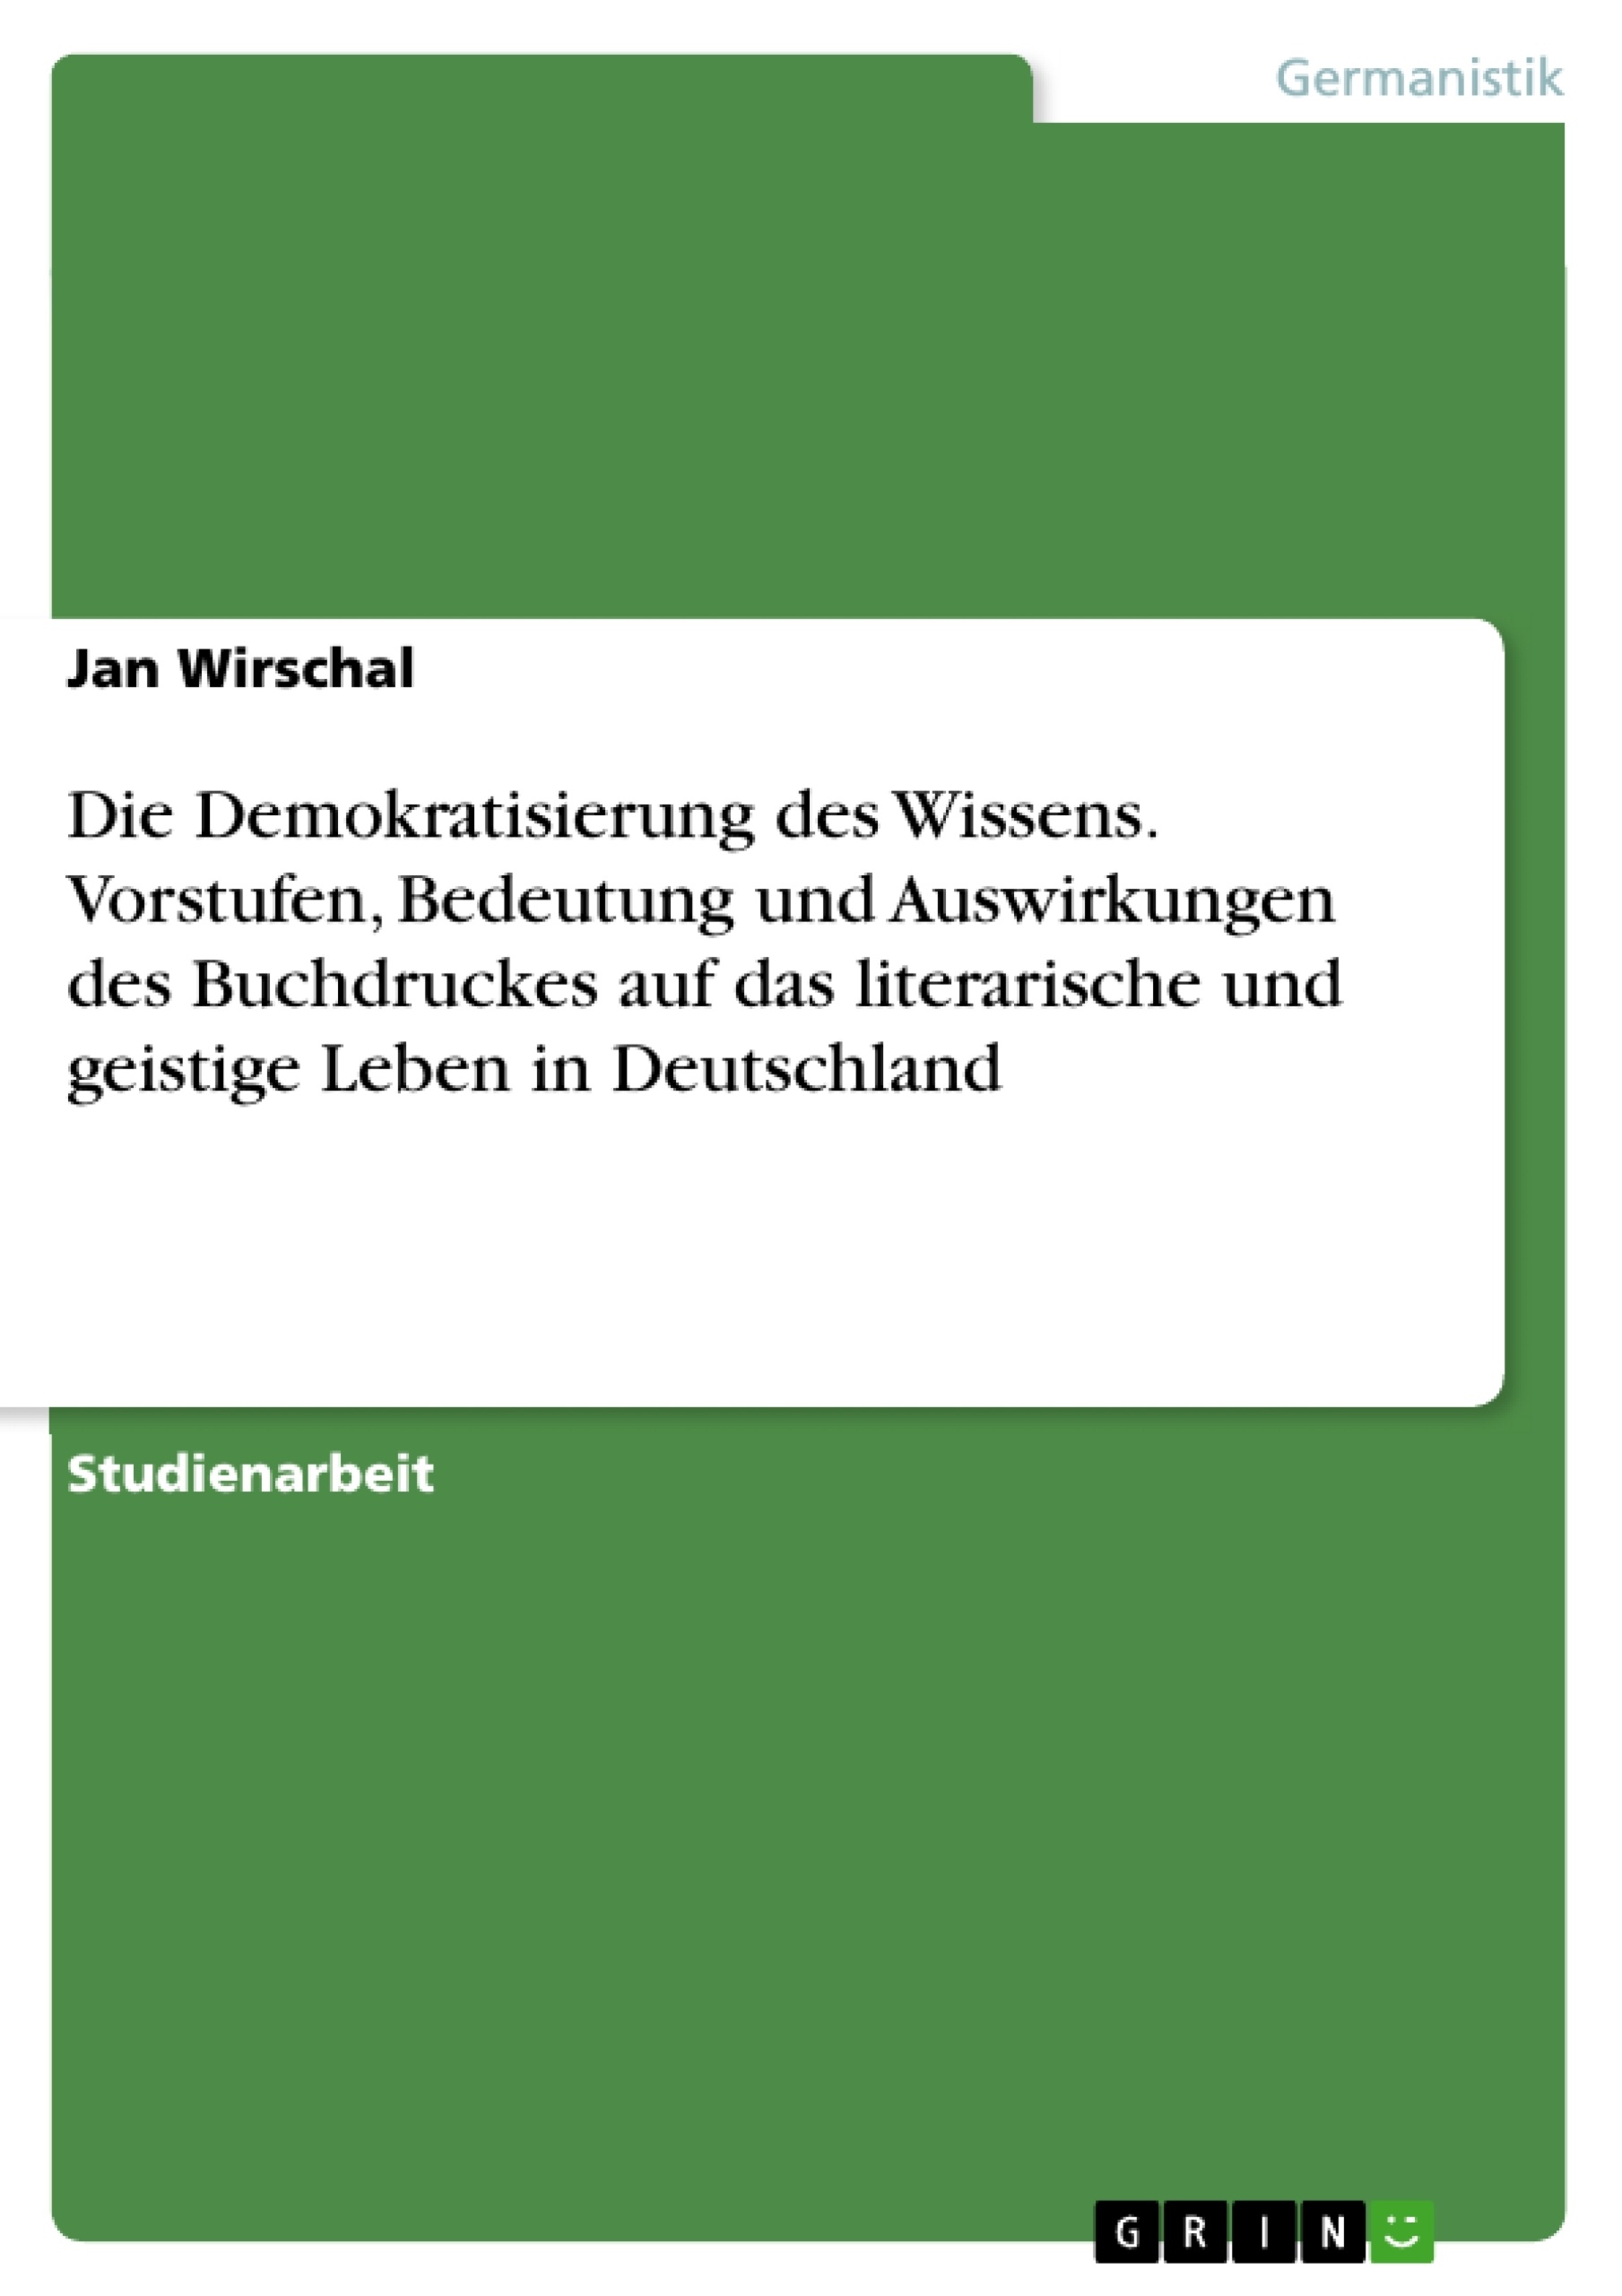 Título: Die Demokratisierung des Wissens. Vorstufen, Bedeutung und Auswirkungen des Buchdruckes auf das literarische und geistige Leben in Deutschland